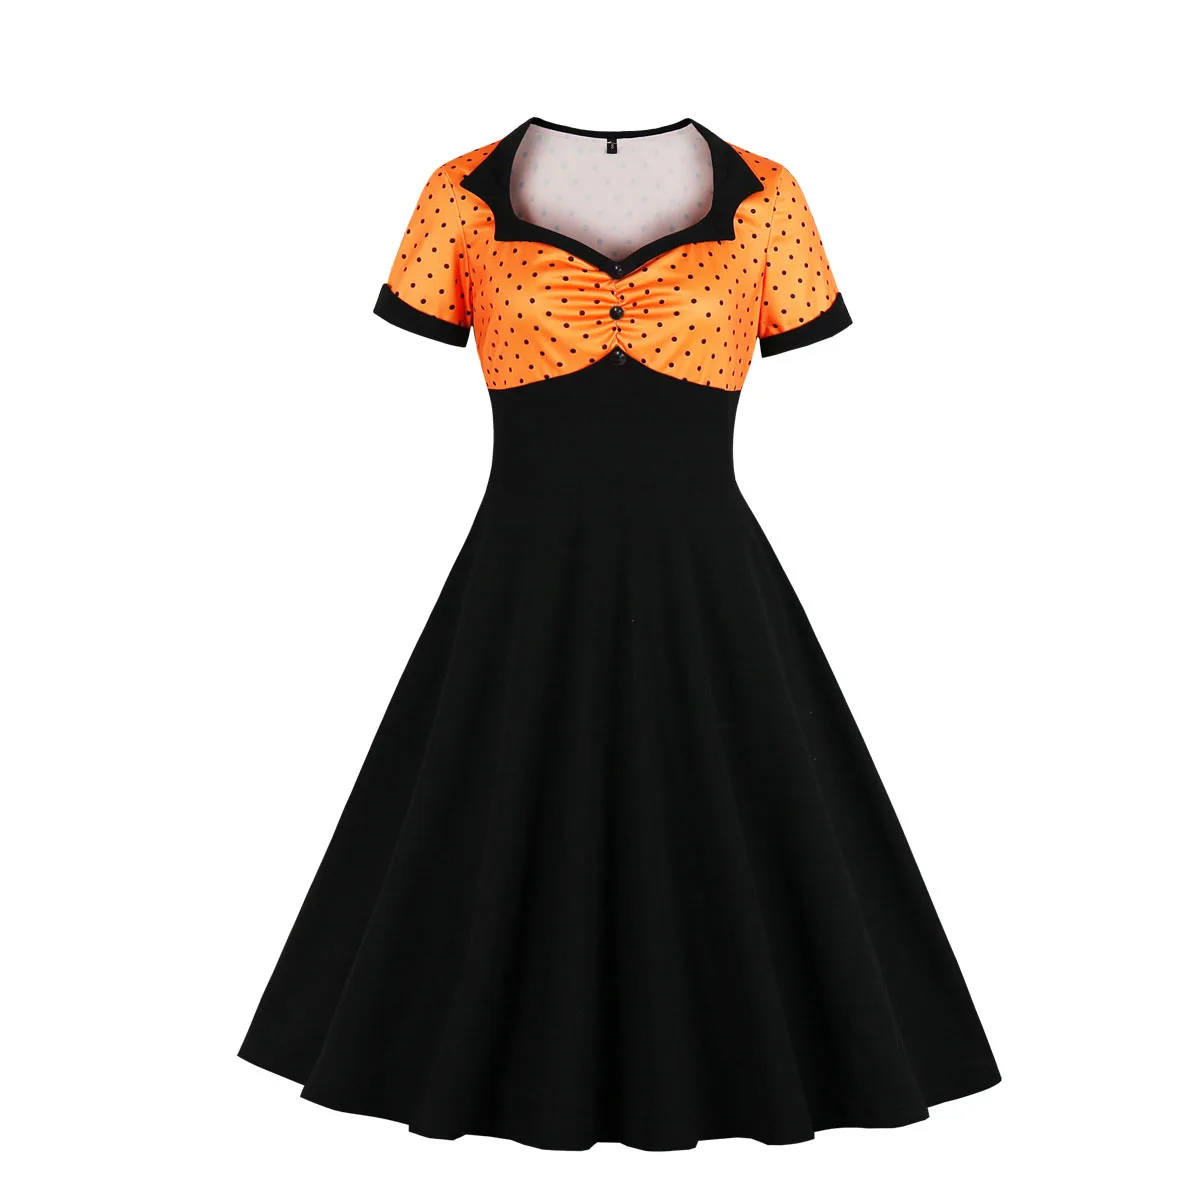 

Женское винтажное платье в горошек, черное платье в стиле Одри Хепберн, с пышной юбкой качели в стиле рокабилли, с пышной юбкой 50-60-х годов, по...